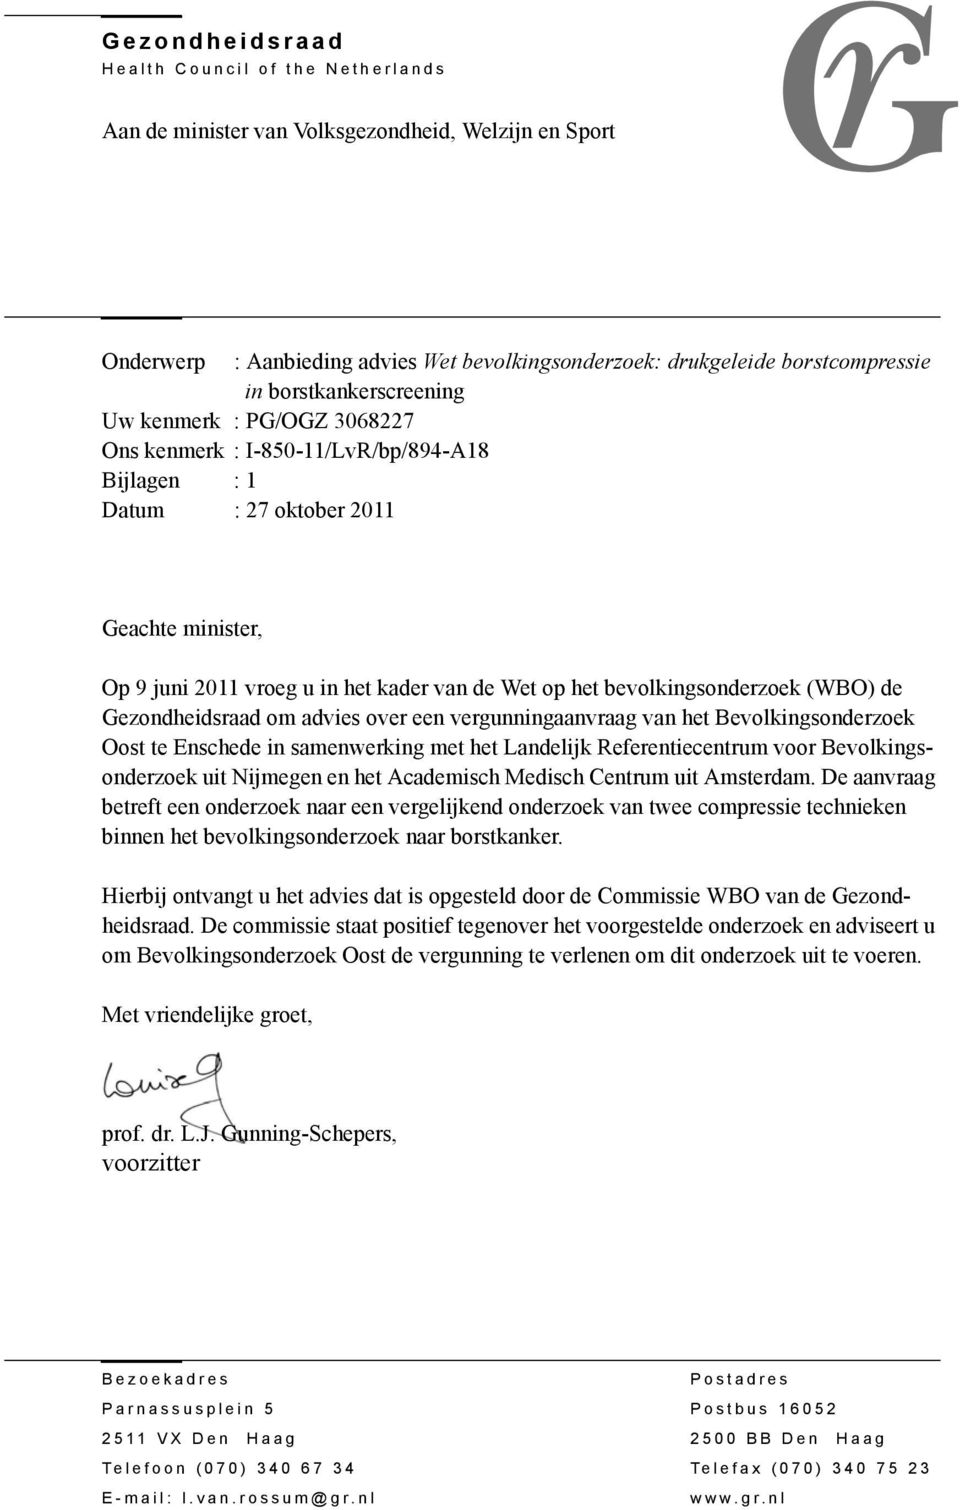 bevolkingsonderzoek (WBO) de Gezondheidsraad om advies over een vergunningaanvraag van het Bevolkingsonderzoek Oost te Enschede in samenwerking met het Landelijk Referentiecentrum voor